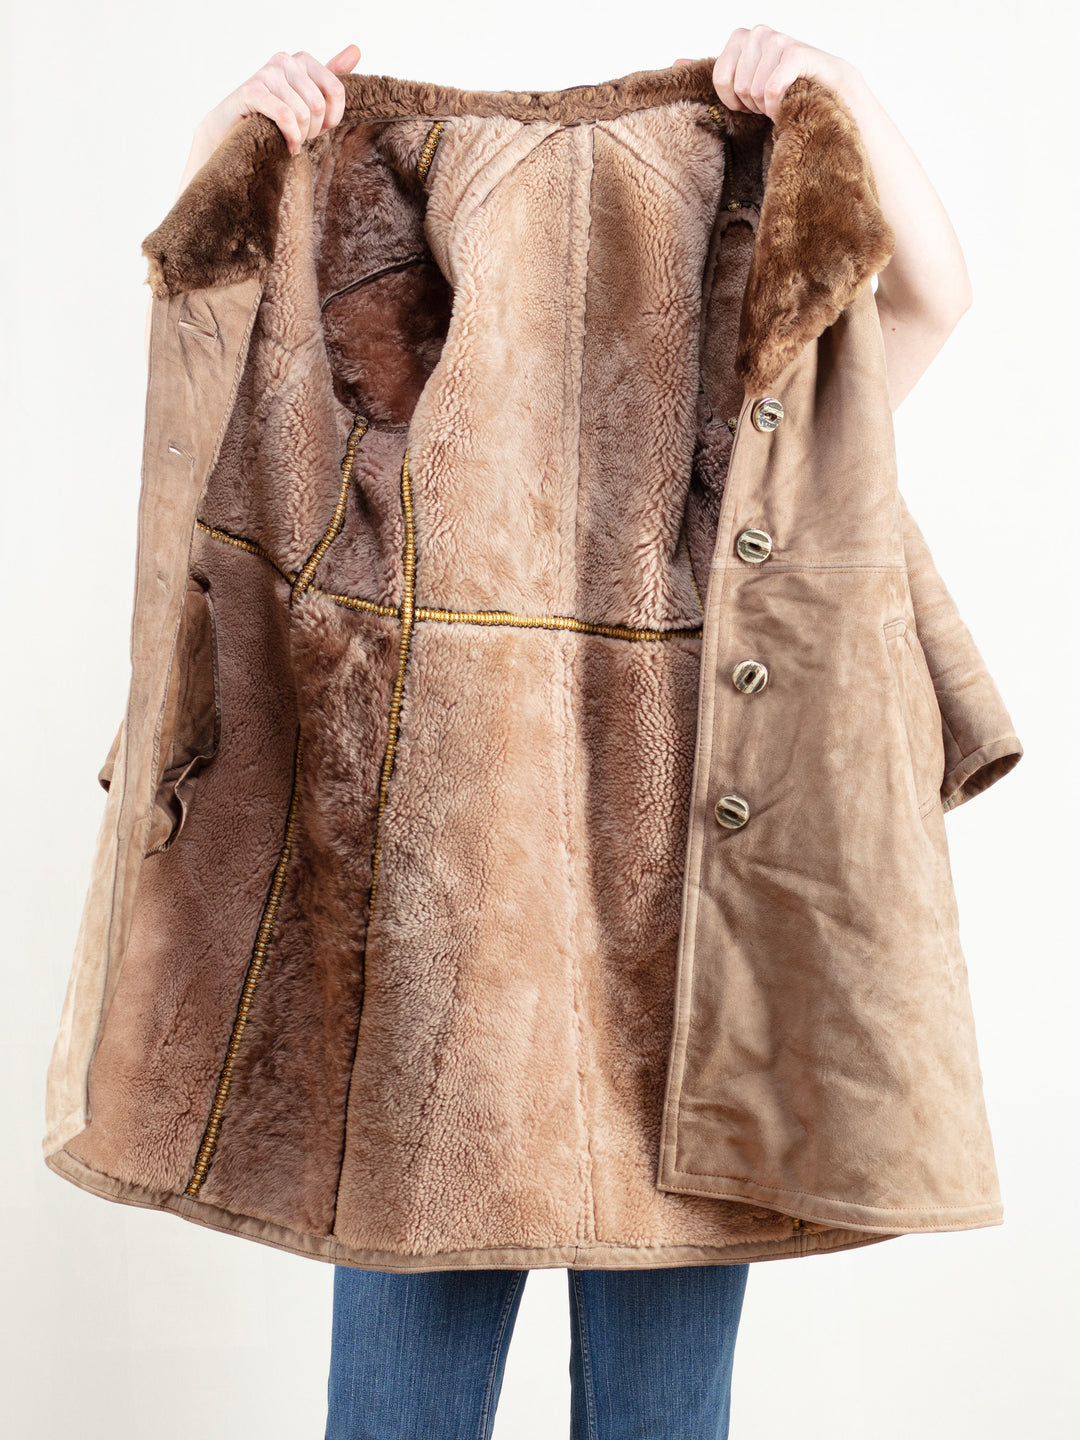 Shearling Women Coat vintage 70s suede leather coat penny lane style coat women vintage clothing retro 70s clothing size large